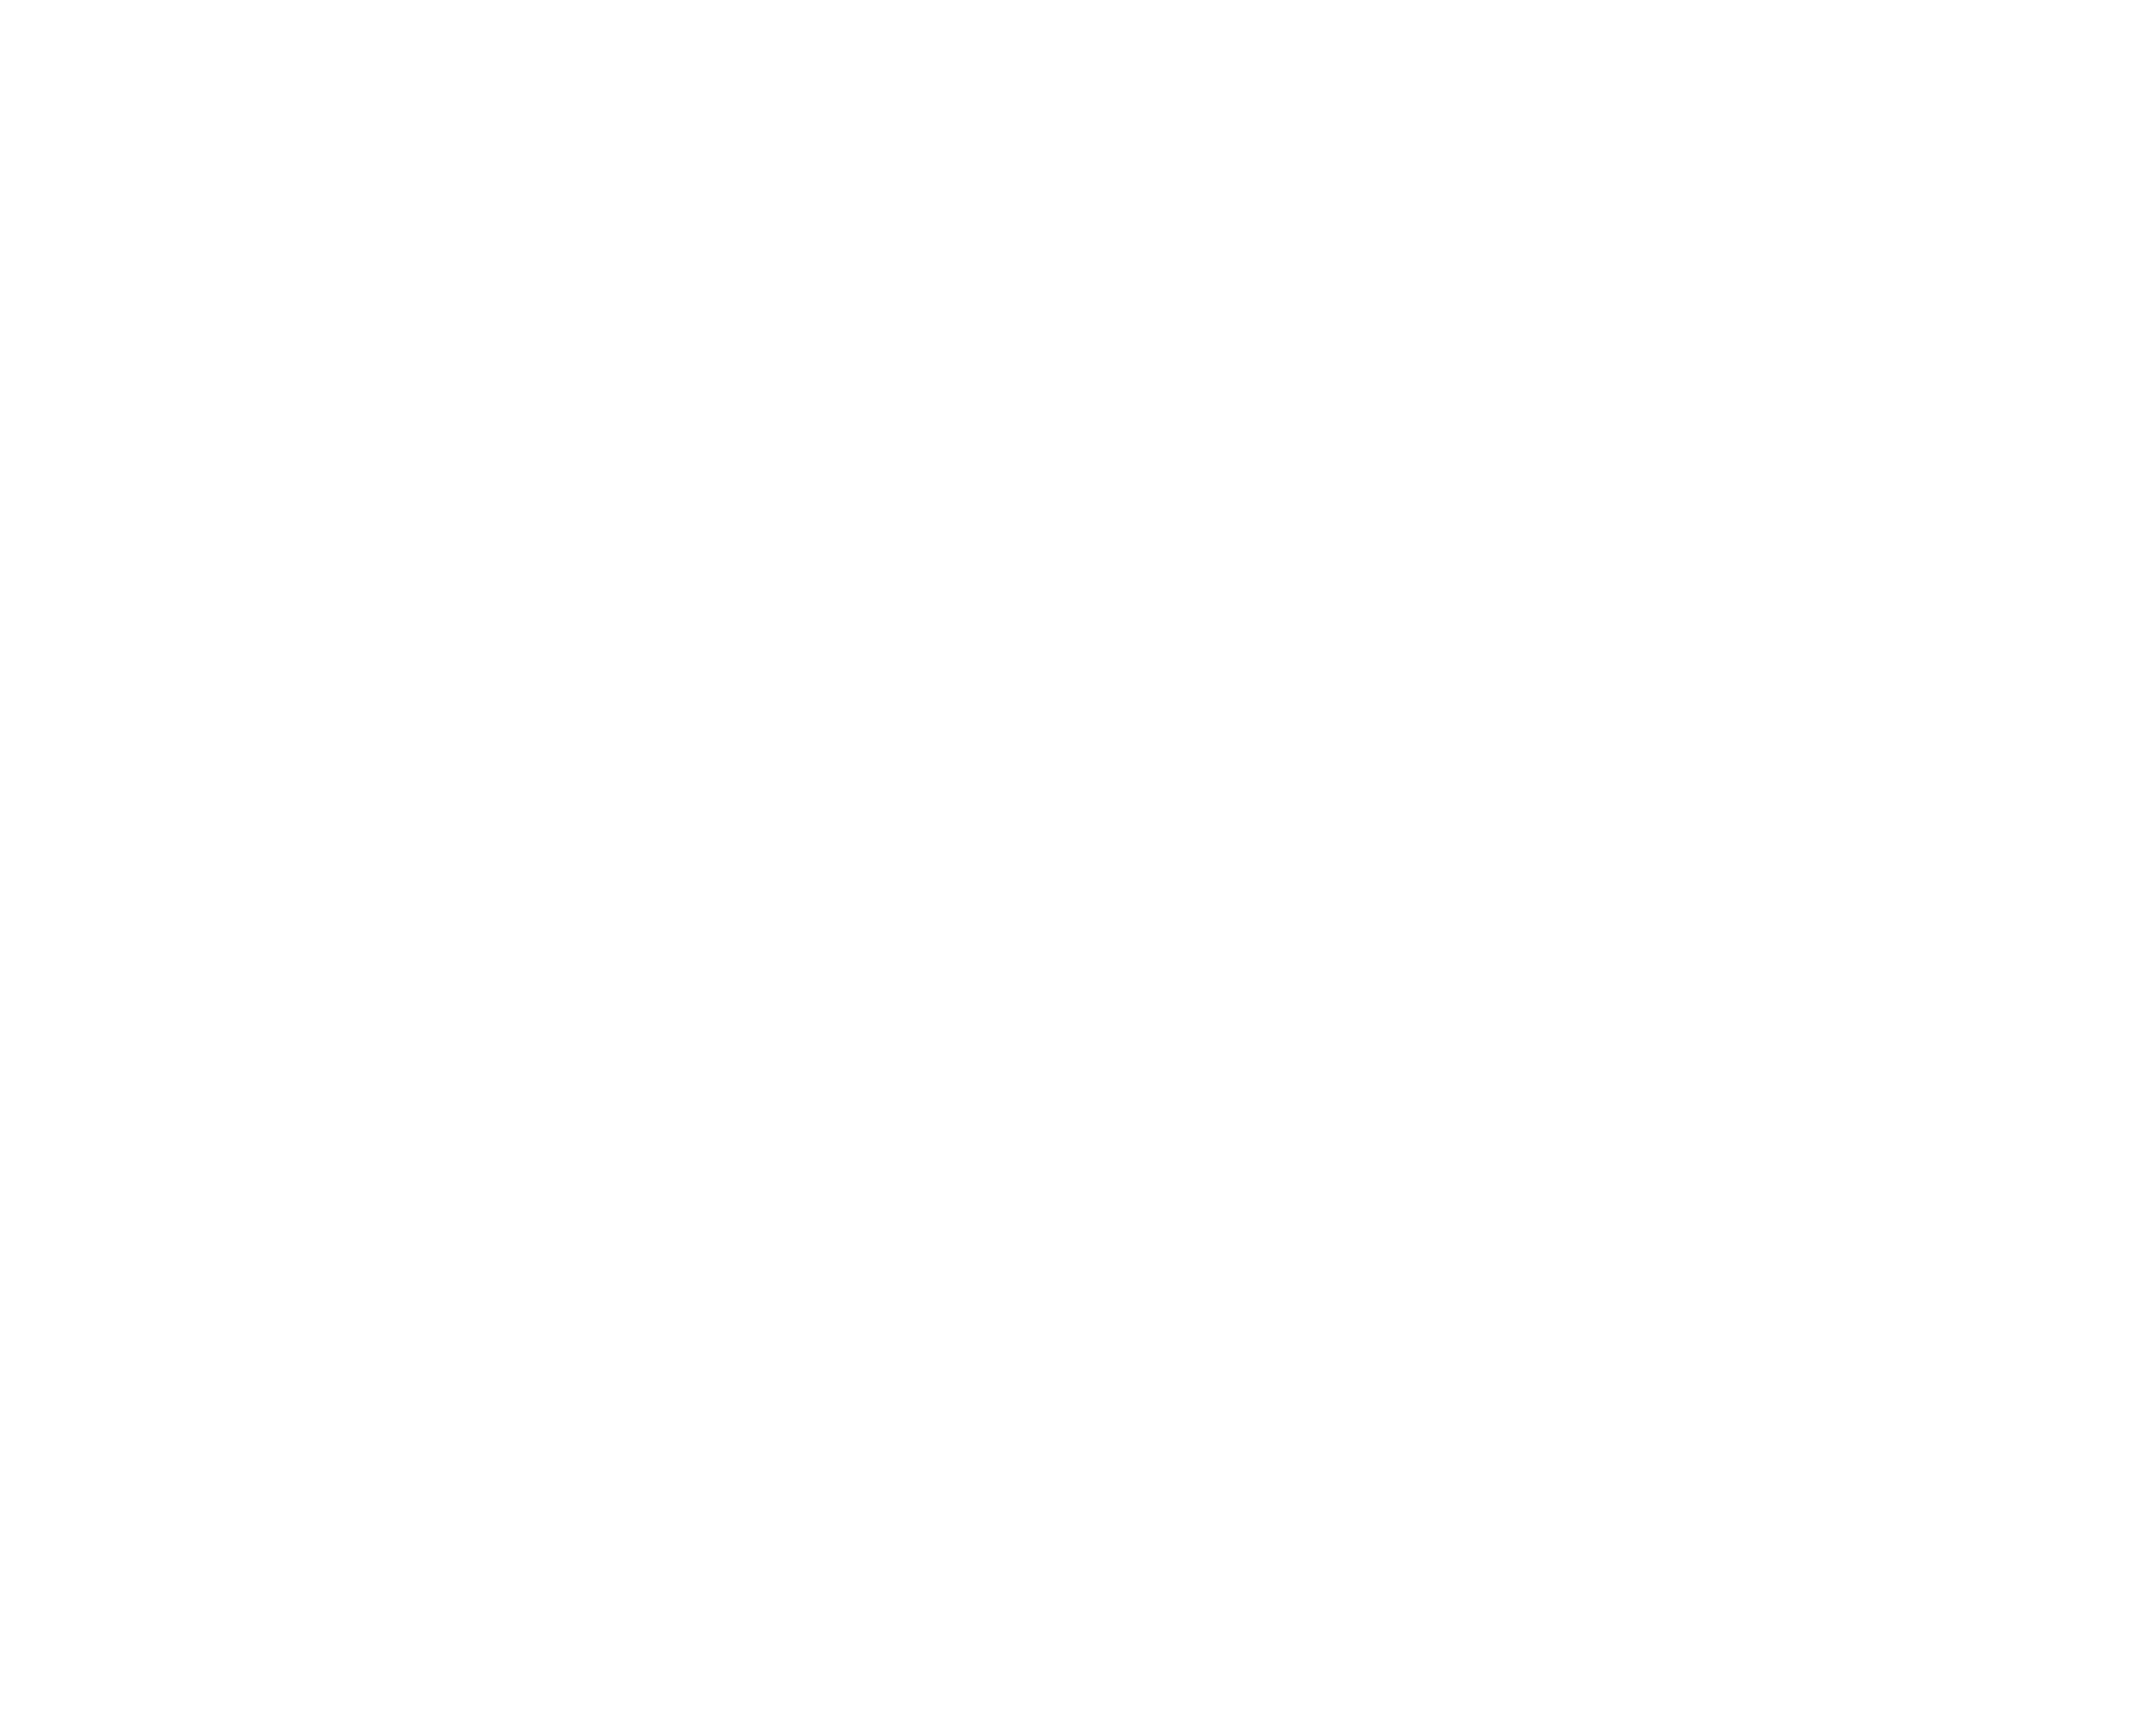 Outdoortest.info | DIE unabhängige Testseite im Outdoorbereich